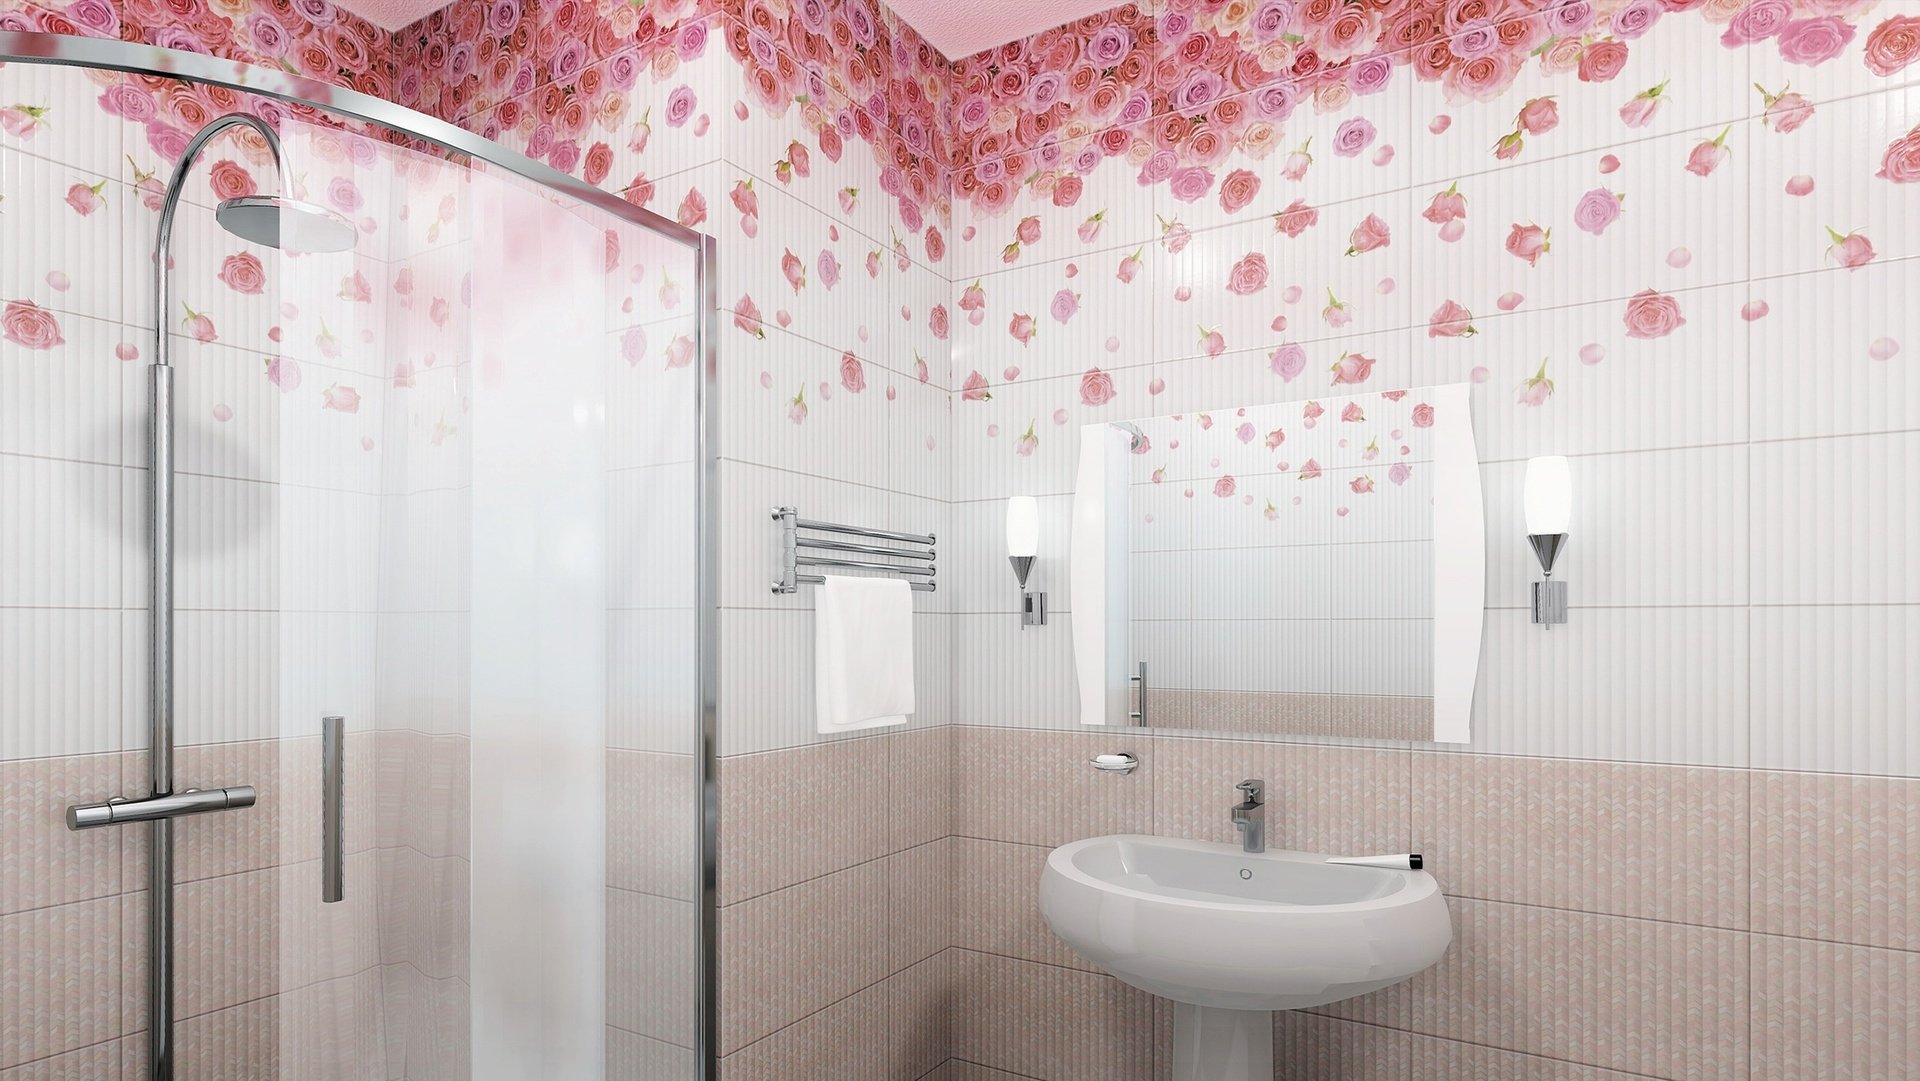 Ванные комнаты из пластиковых панелей фото дизайн